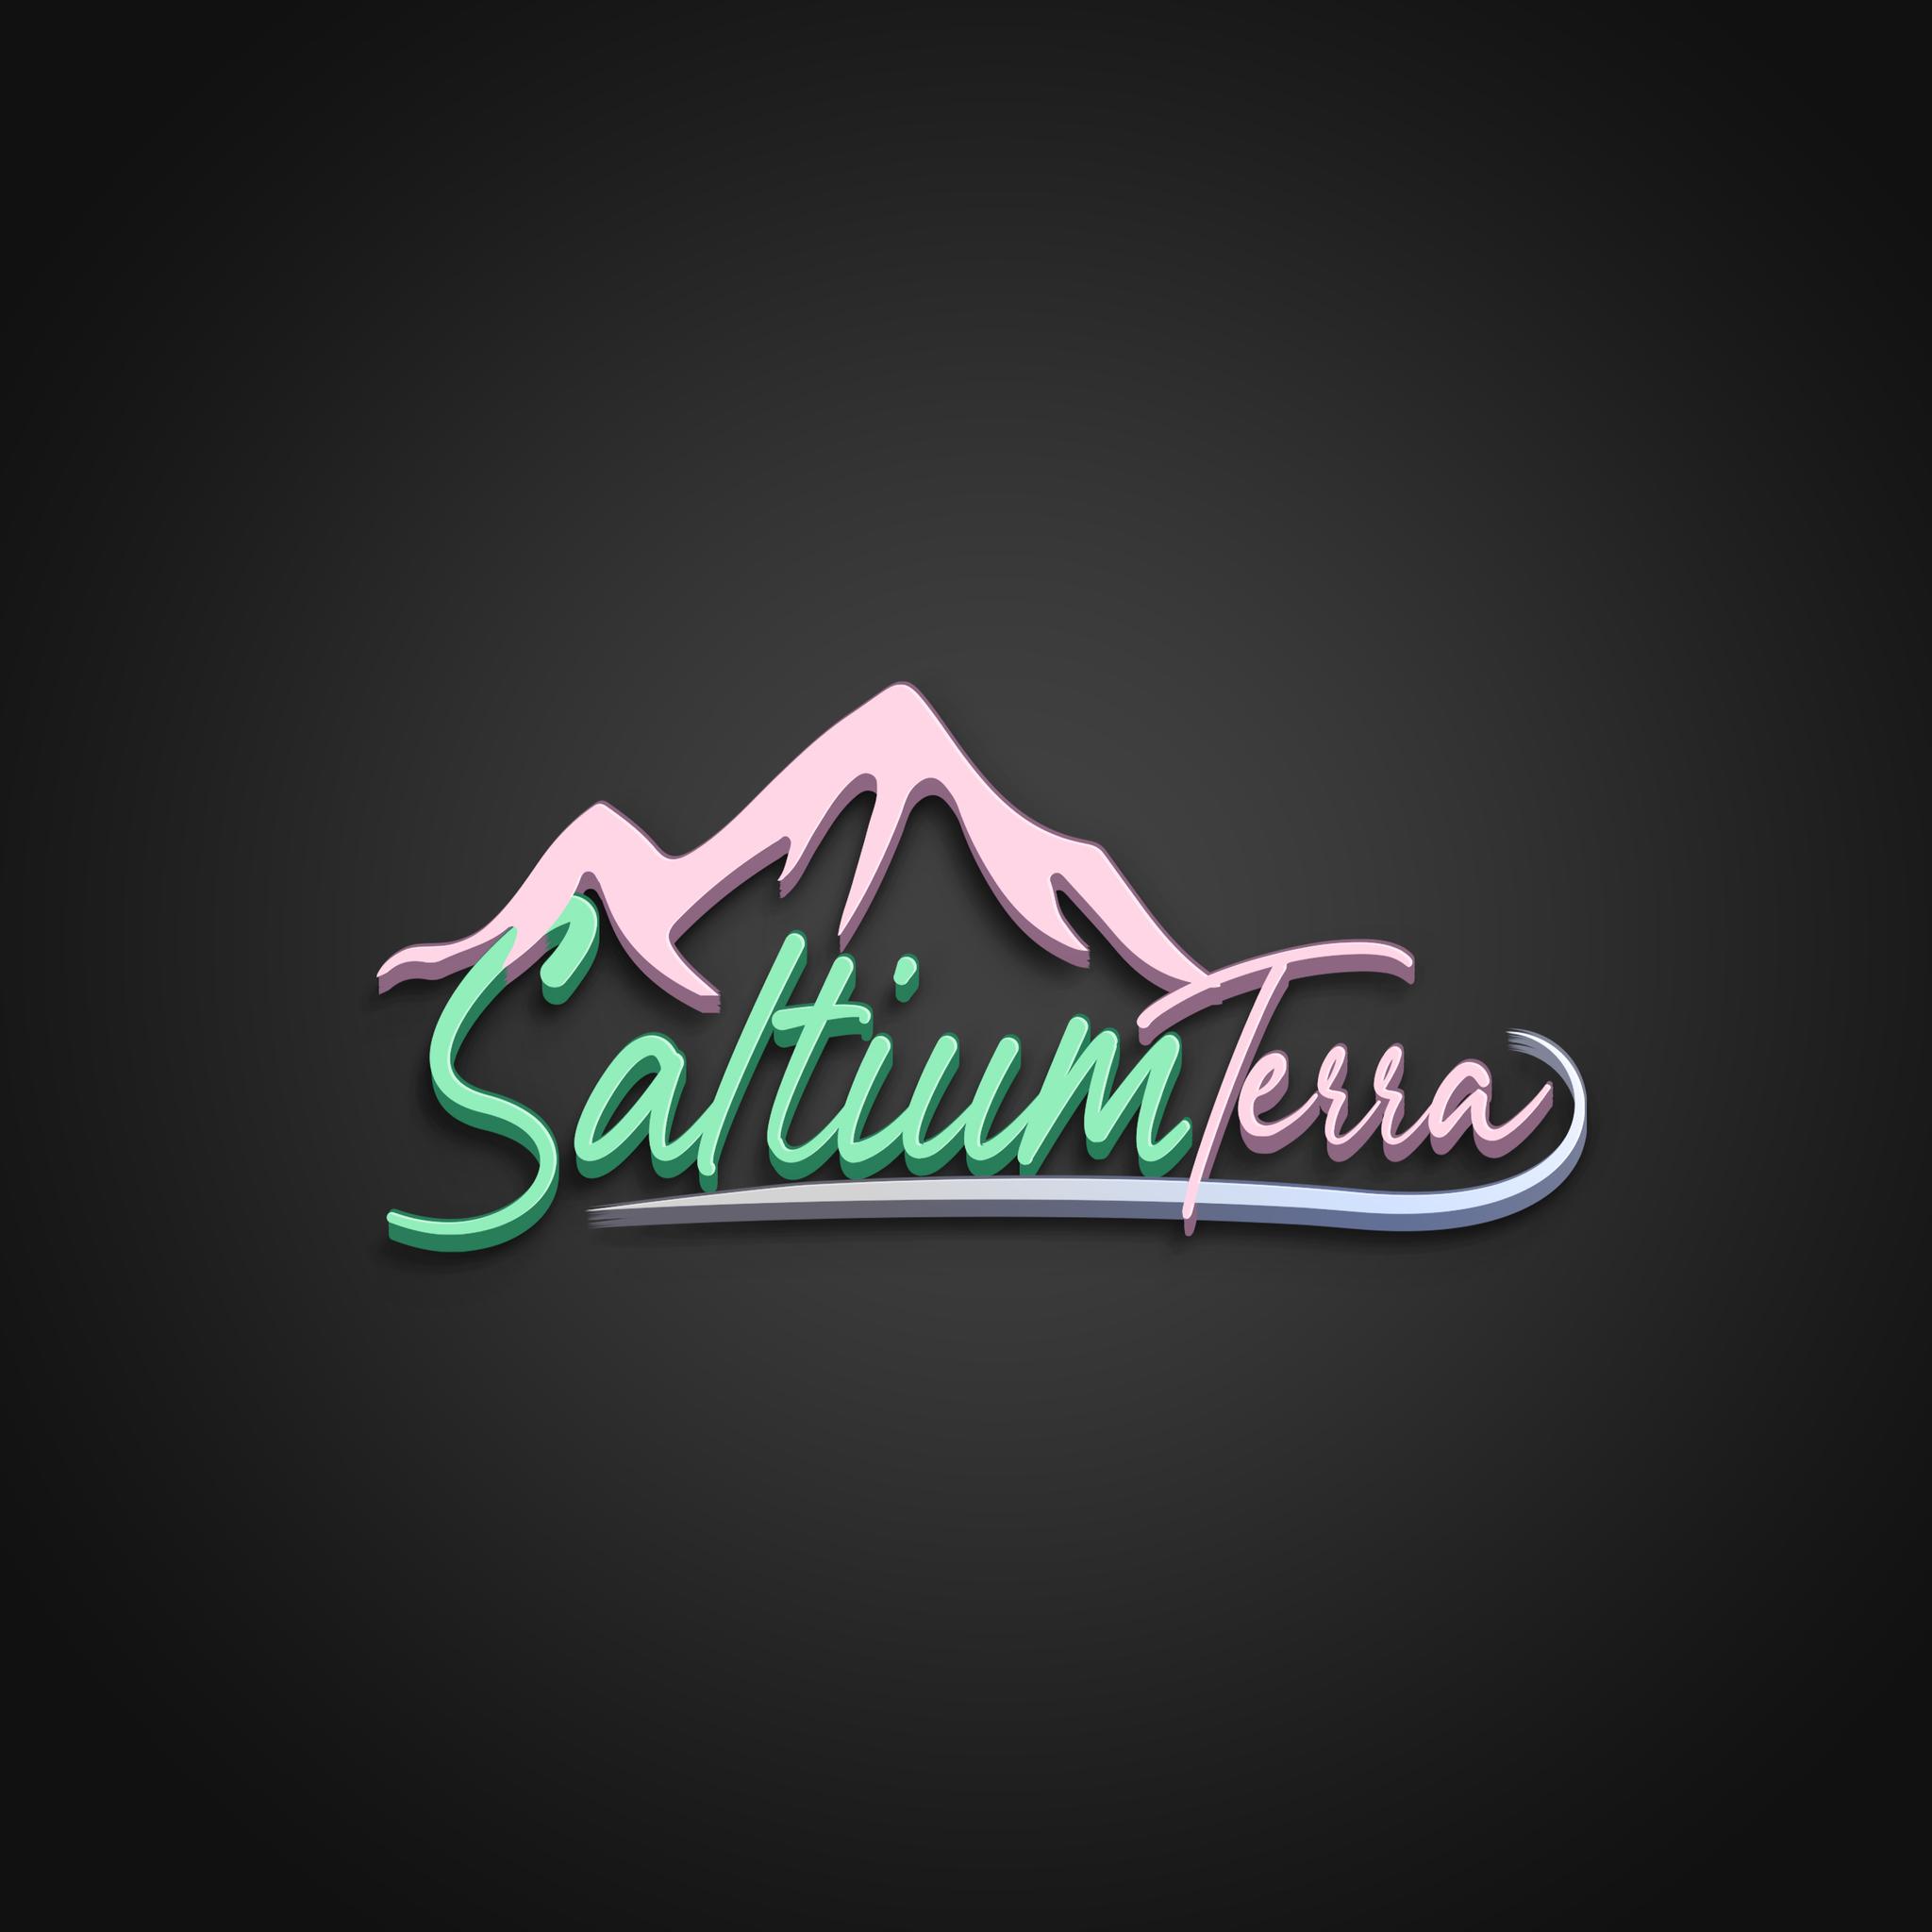 Saltium Terra